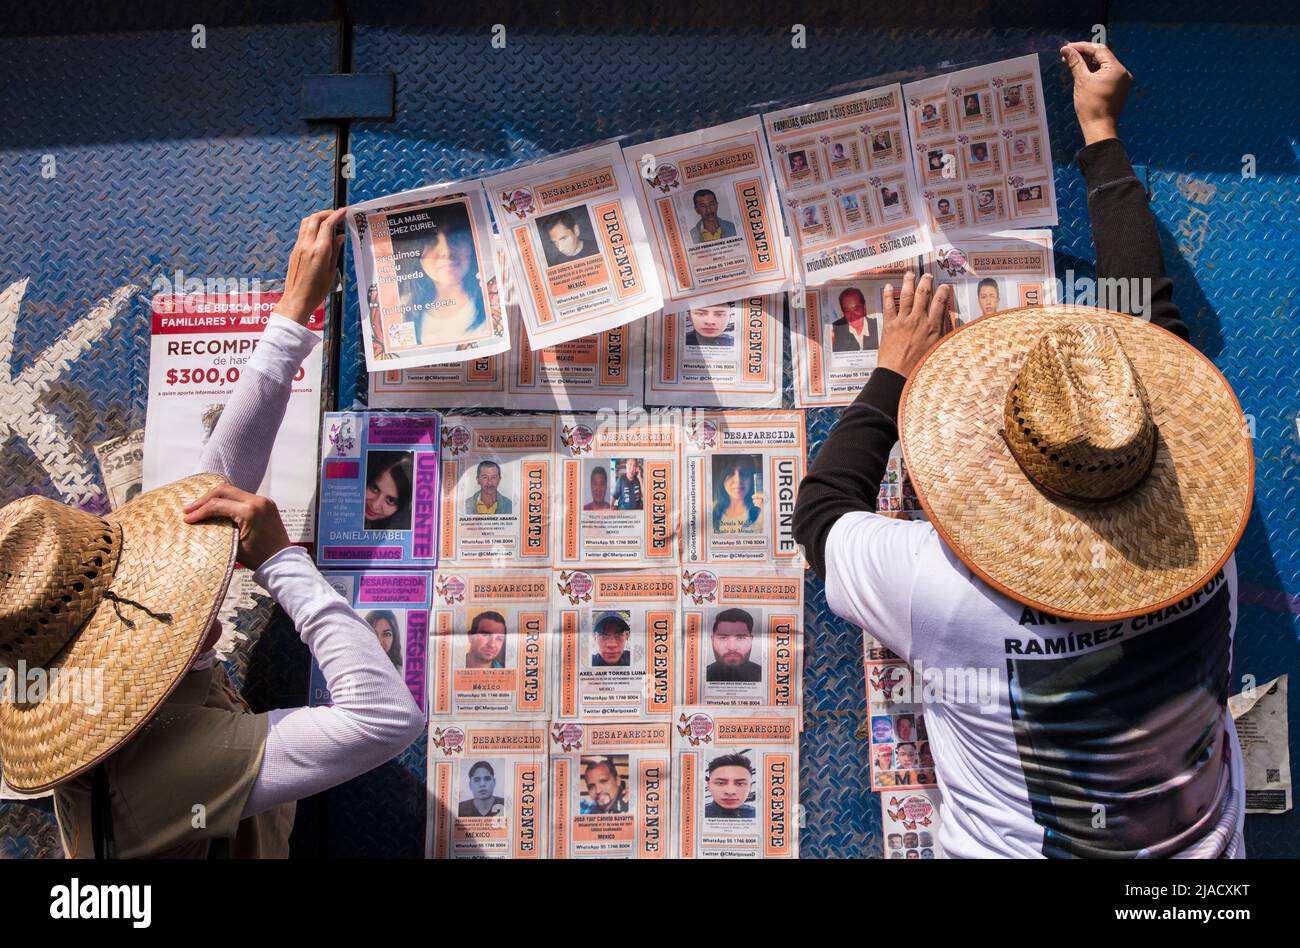 Des parents publient des images de personnes disparues sur un mur commémoratif de fortune dédié aux personnes disparues à Mexico, au Mexique Banque D'Images